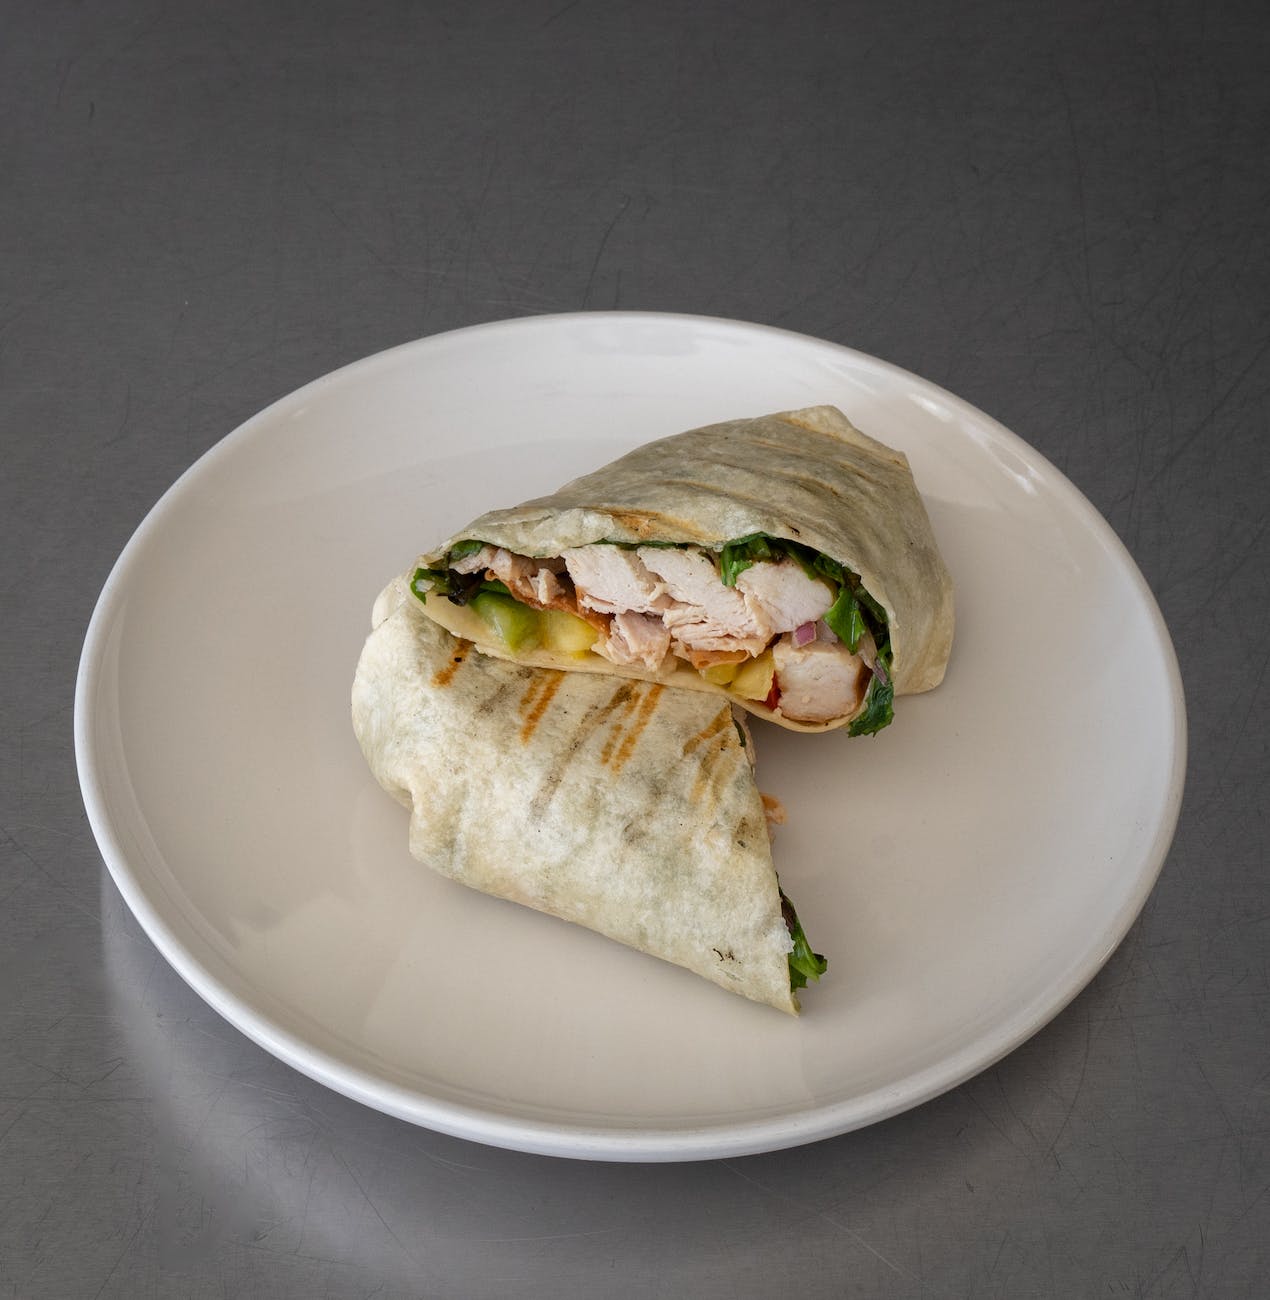 assiette ronde en céramique blanche avec sandwich wrap au poulet